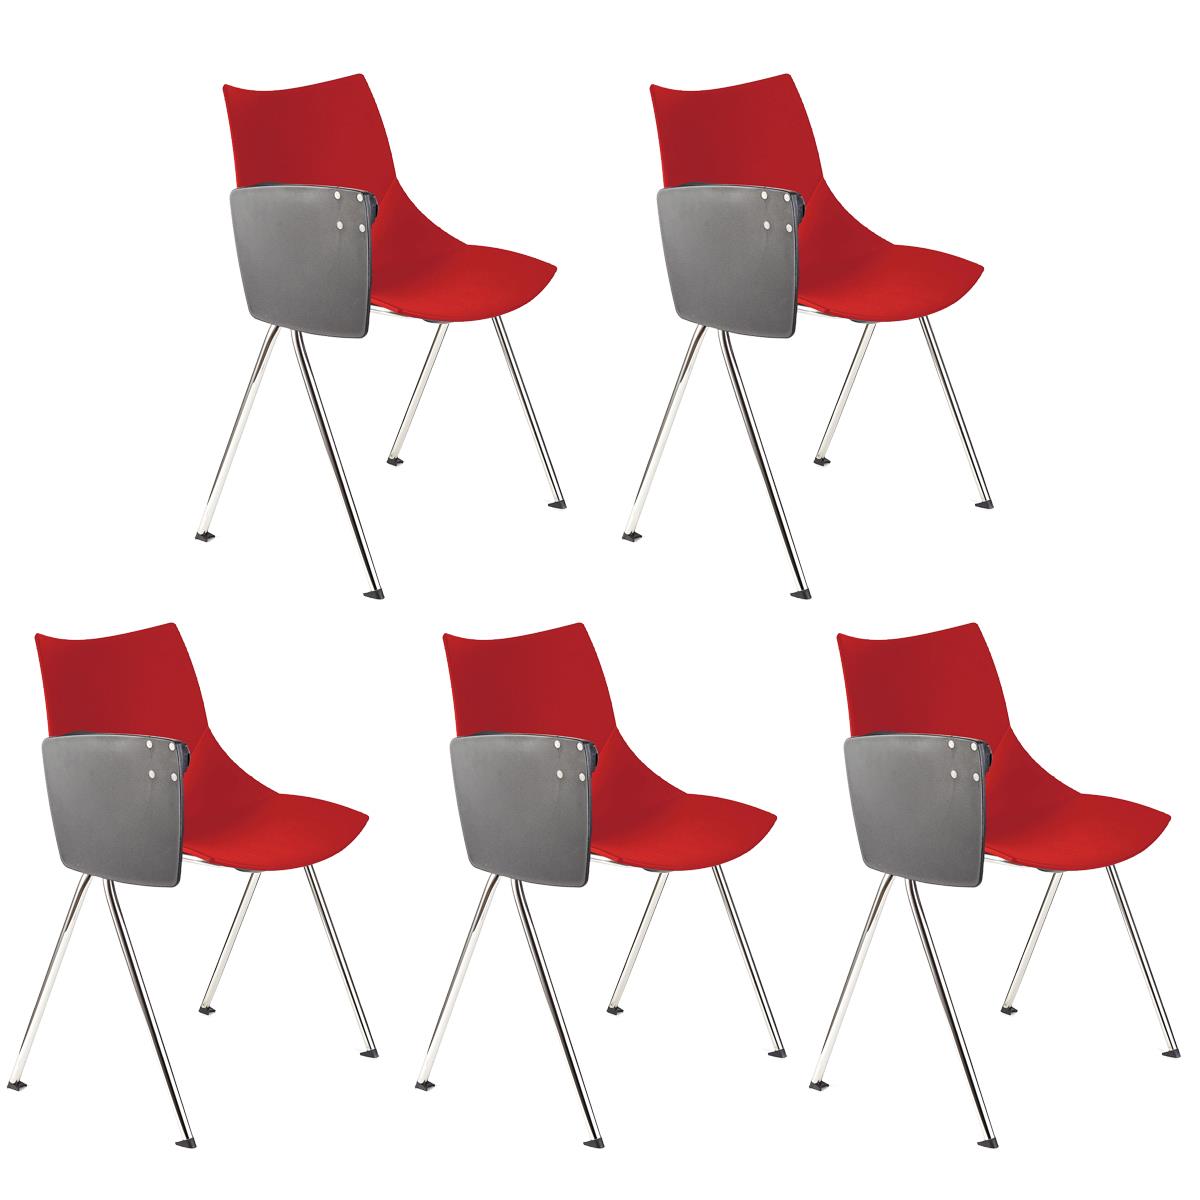 Lote de 5 sillas de Confidente AMIR CON PALA, Cómodas y Prácticas, Color Rojo